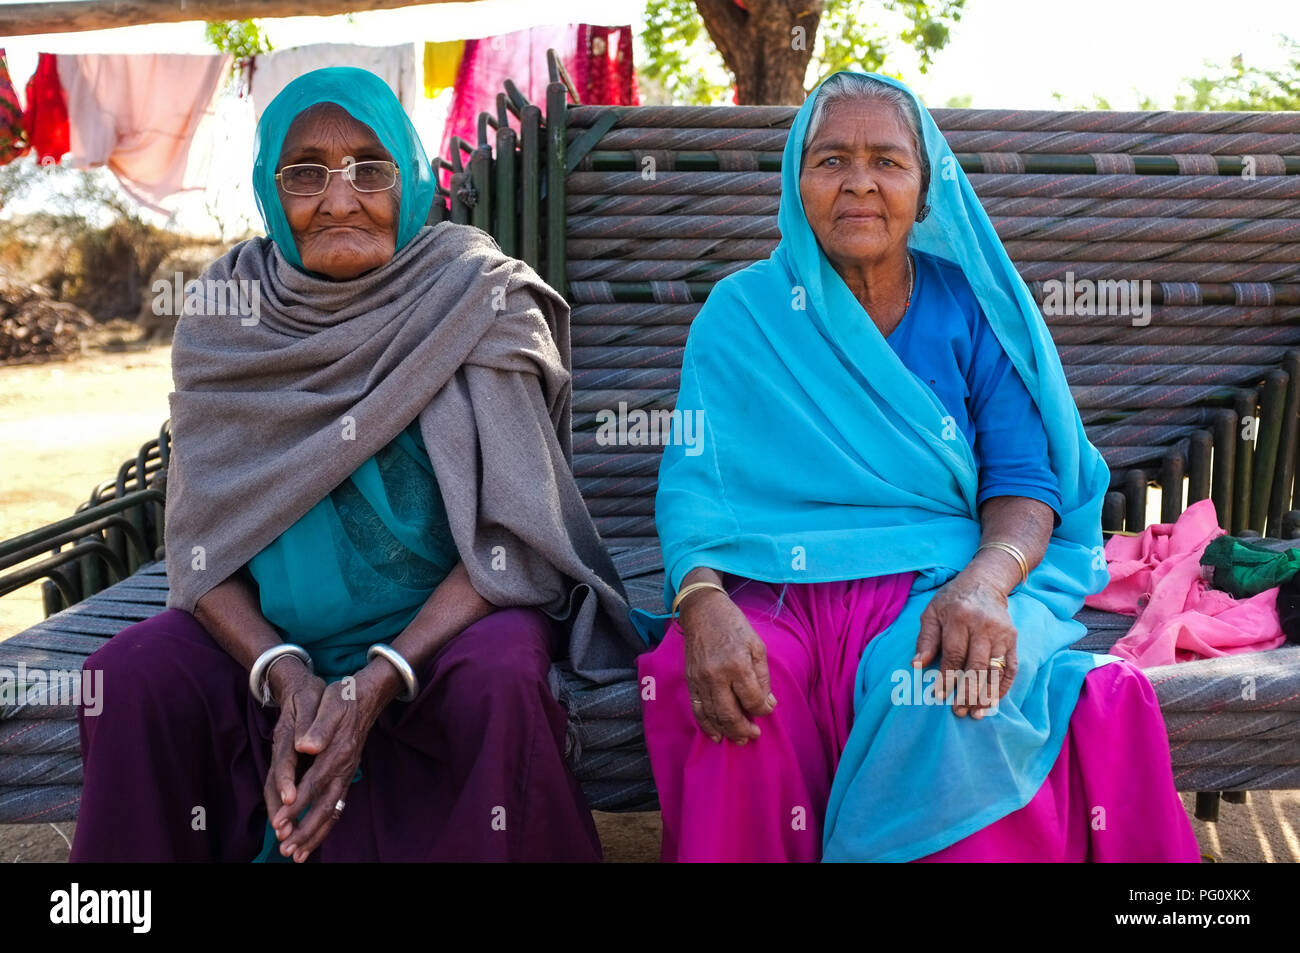 HAMPI, INDIEN - 14. FEBRUAR 2015: Zwei alte indische Frauen in traditioneller Kleidung und Kopftuch sitzen auf Bänken gestapelt gekleidet. Stockfoto